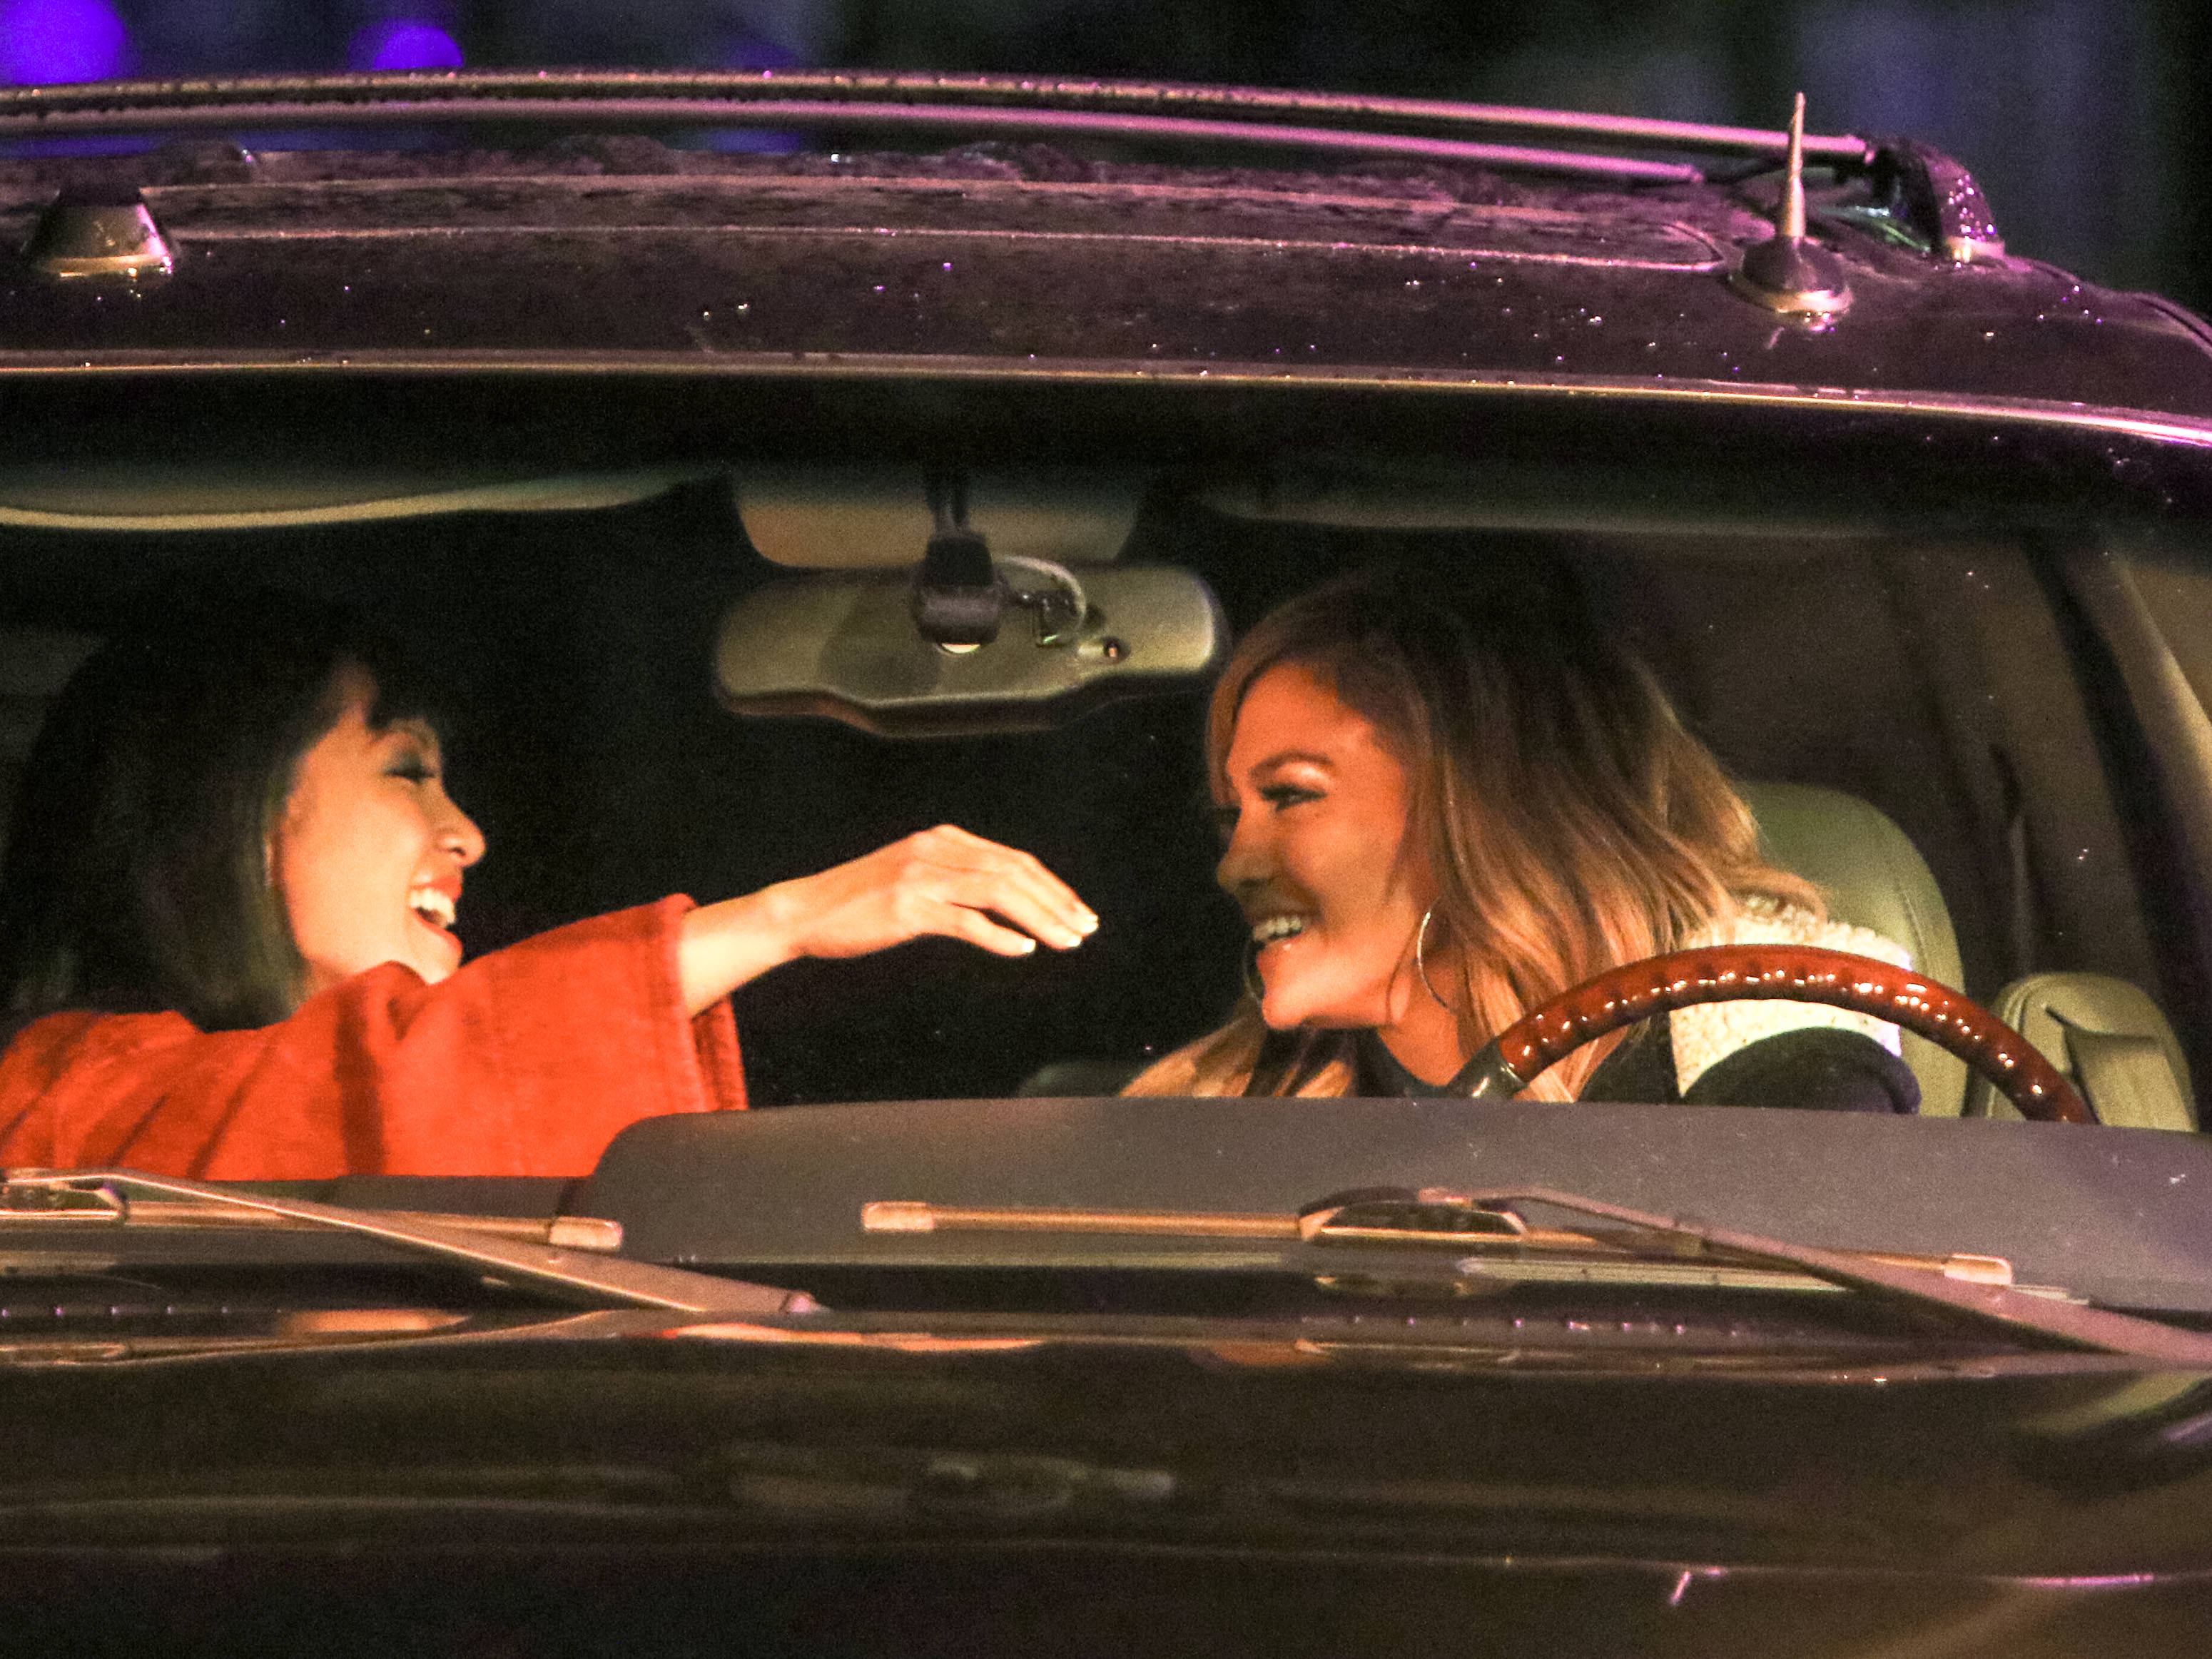 Constance Wu et Jennifer Lopez repérées sur le plateau de tournage de "Hustlers" à New York le 3 mai 2019 | Source : Getty Images